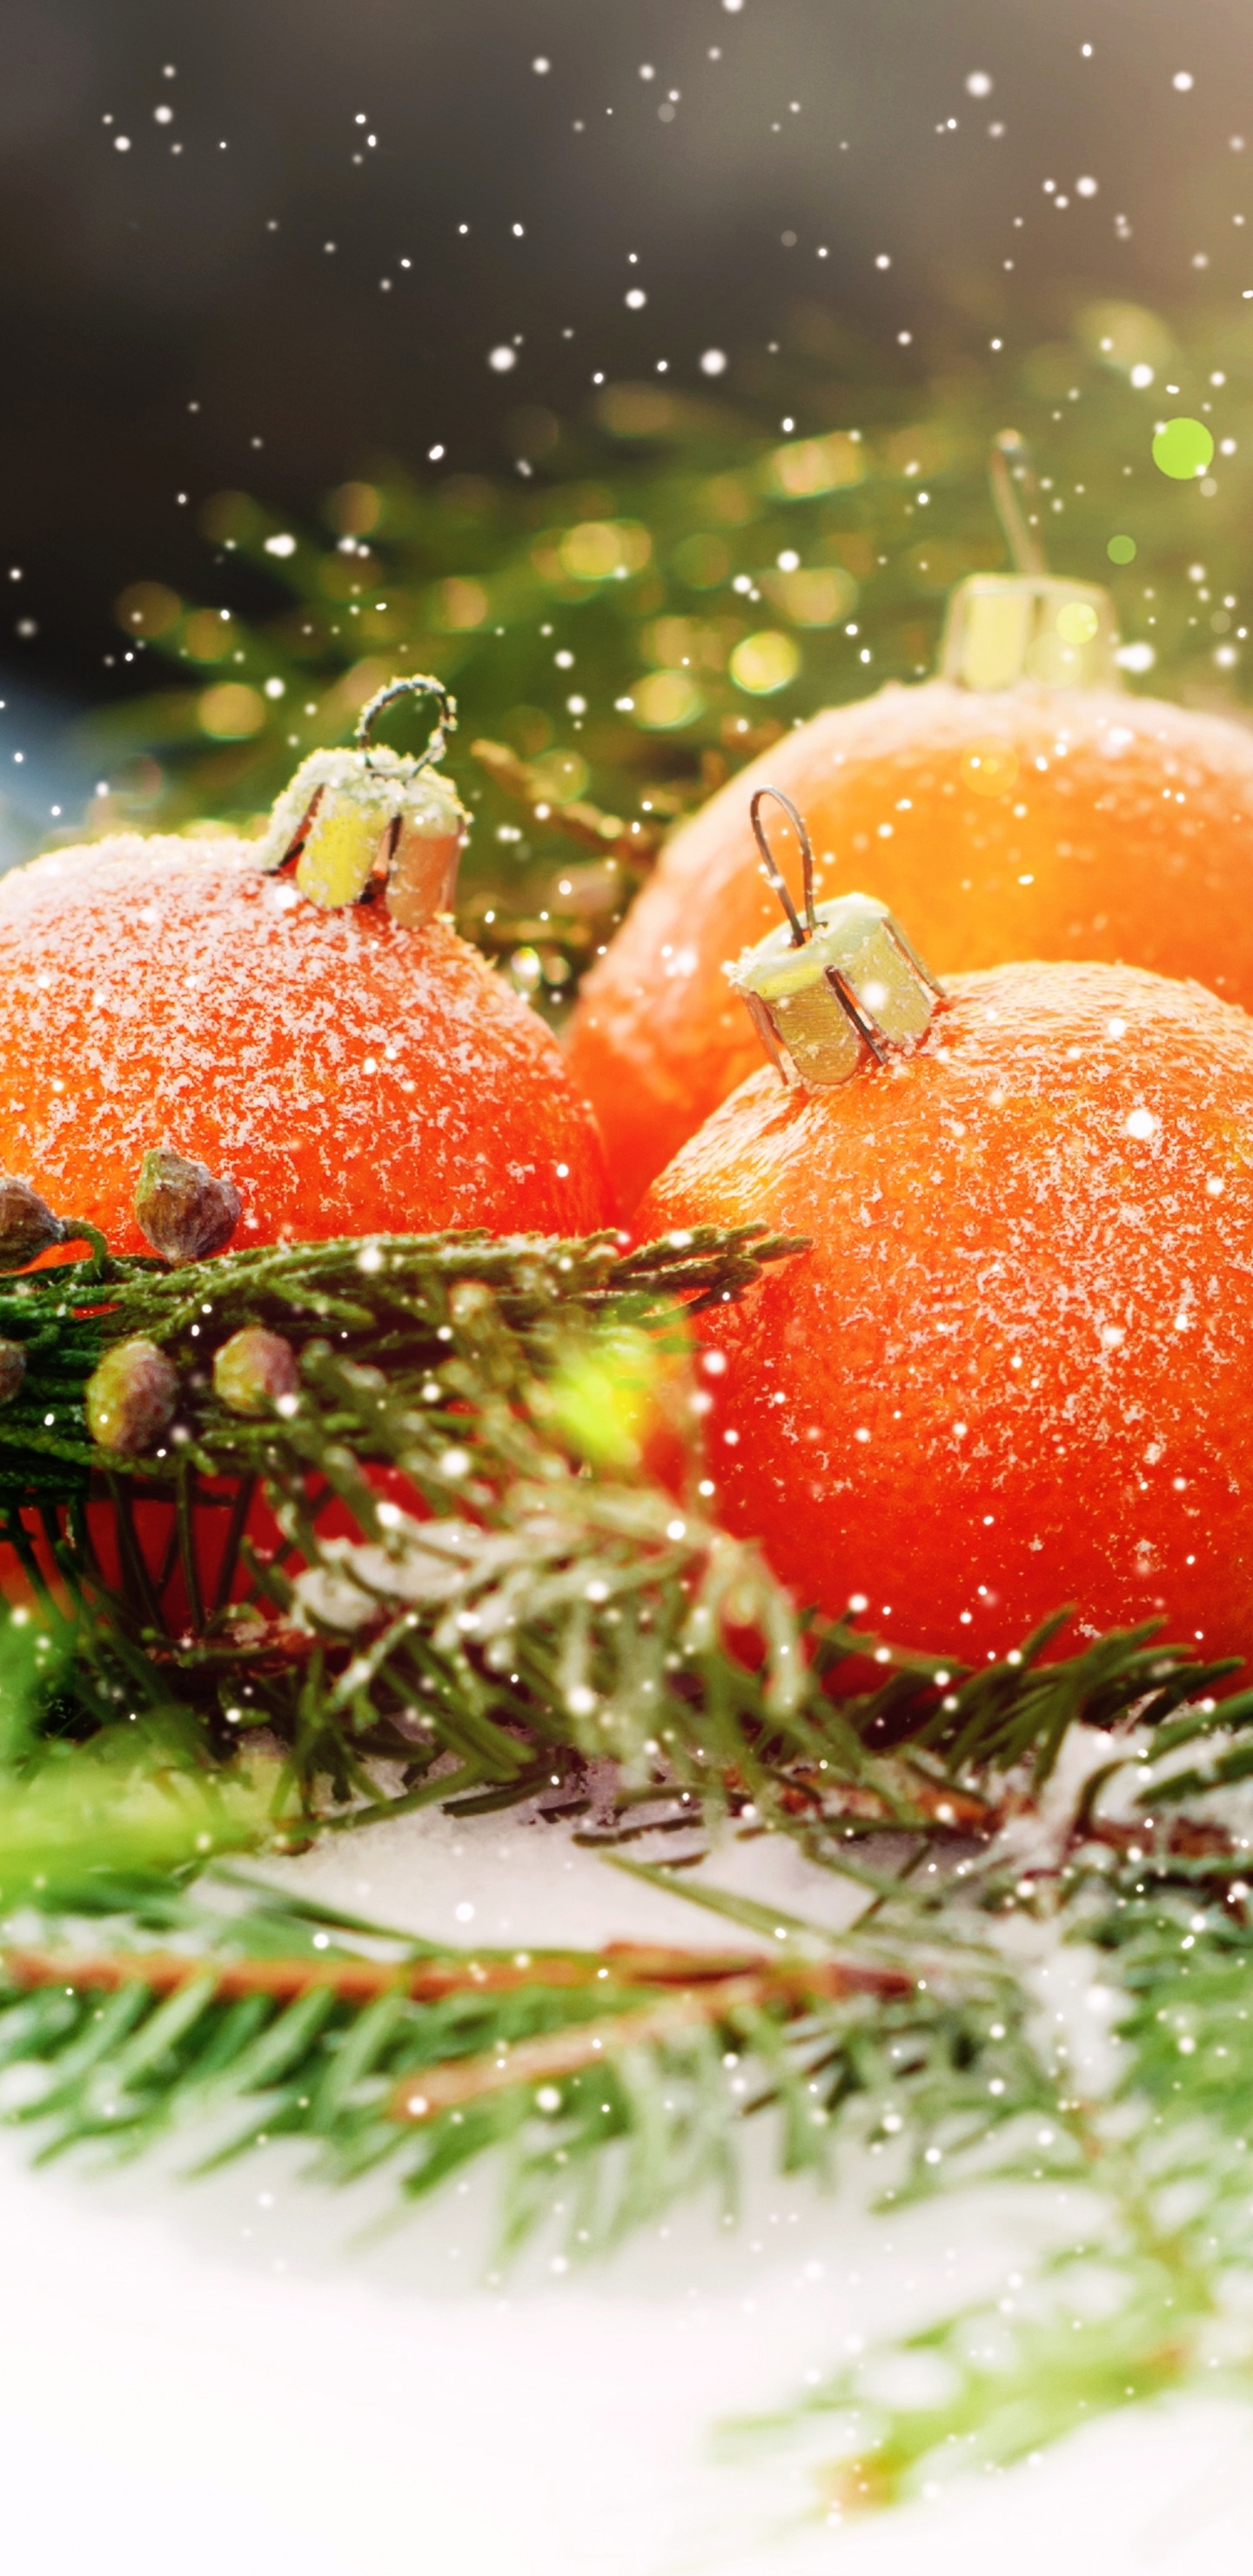 Weihnachten, Neujahr, Vegetarisches Essen, Lebensmittel, Natürliche Lebensmittel. Wallpaper in 1440x2960 Resolution